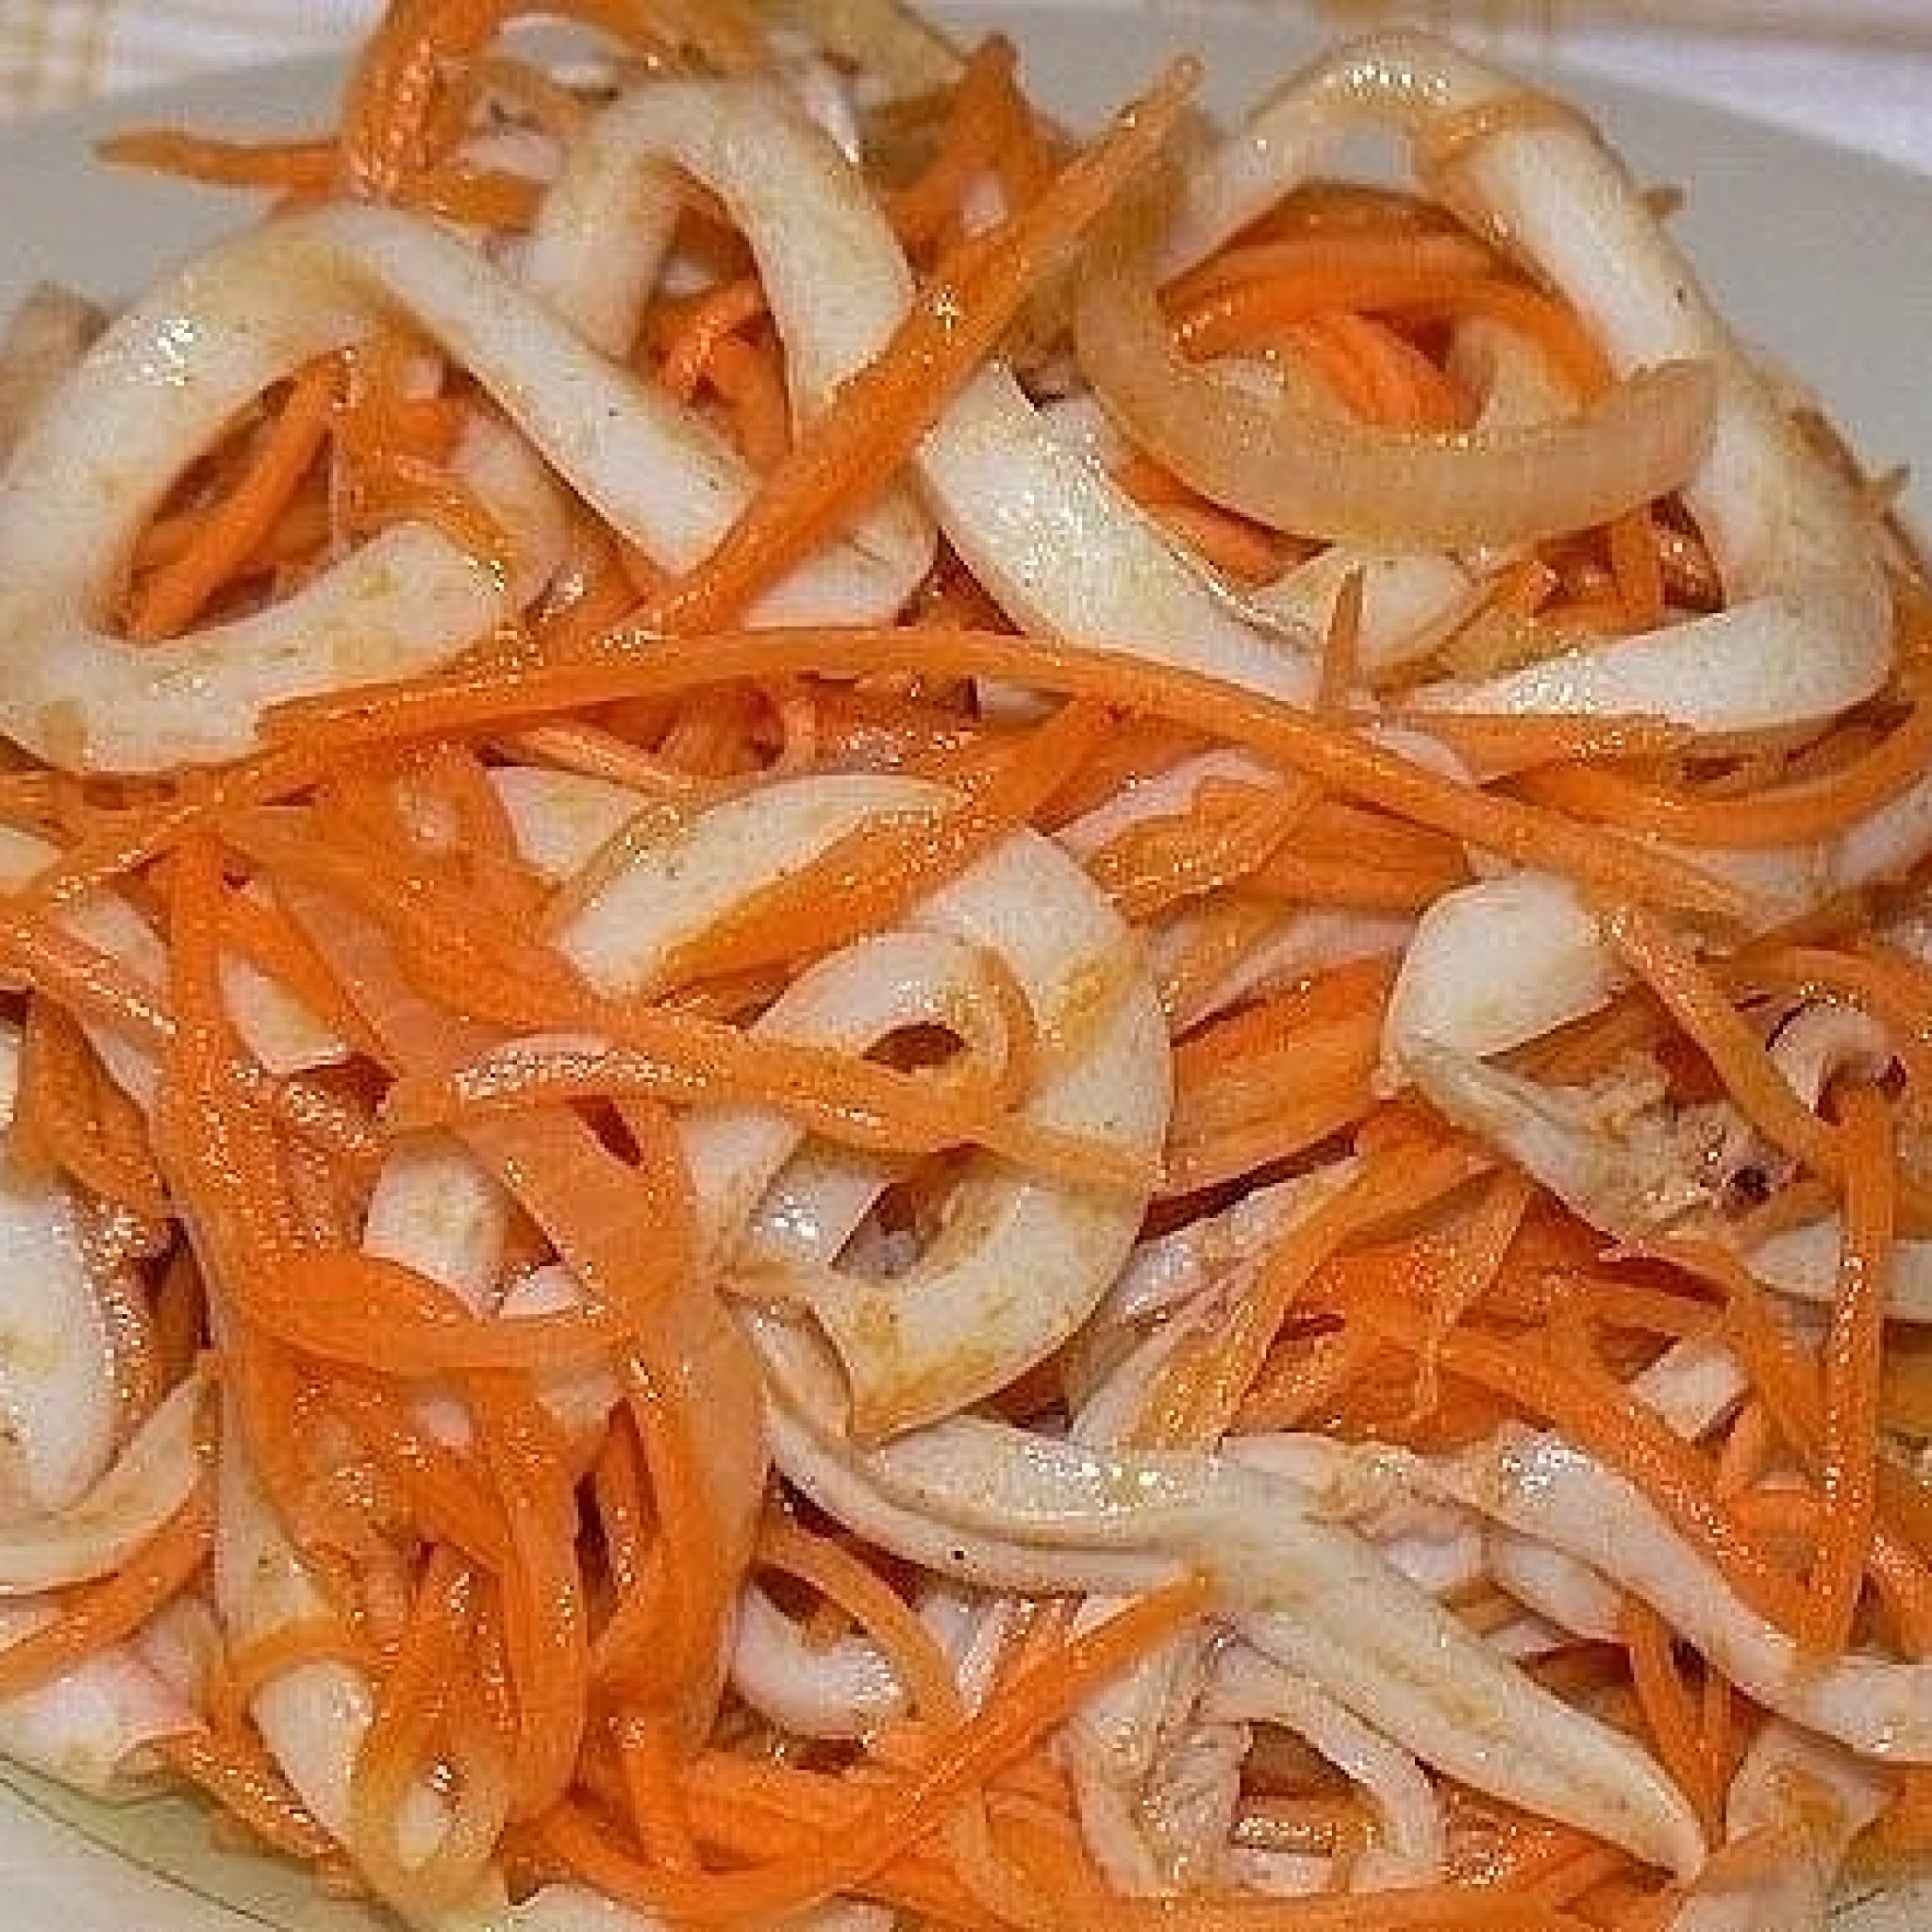 Салат из кальмаров и кальмаров рецепт с фото очень вкусный